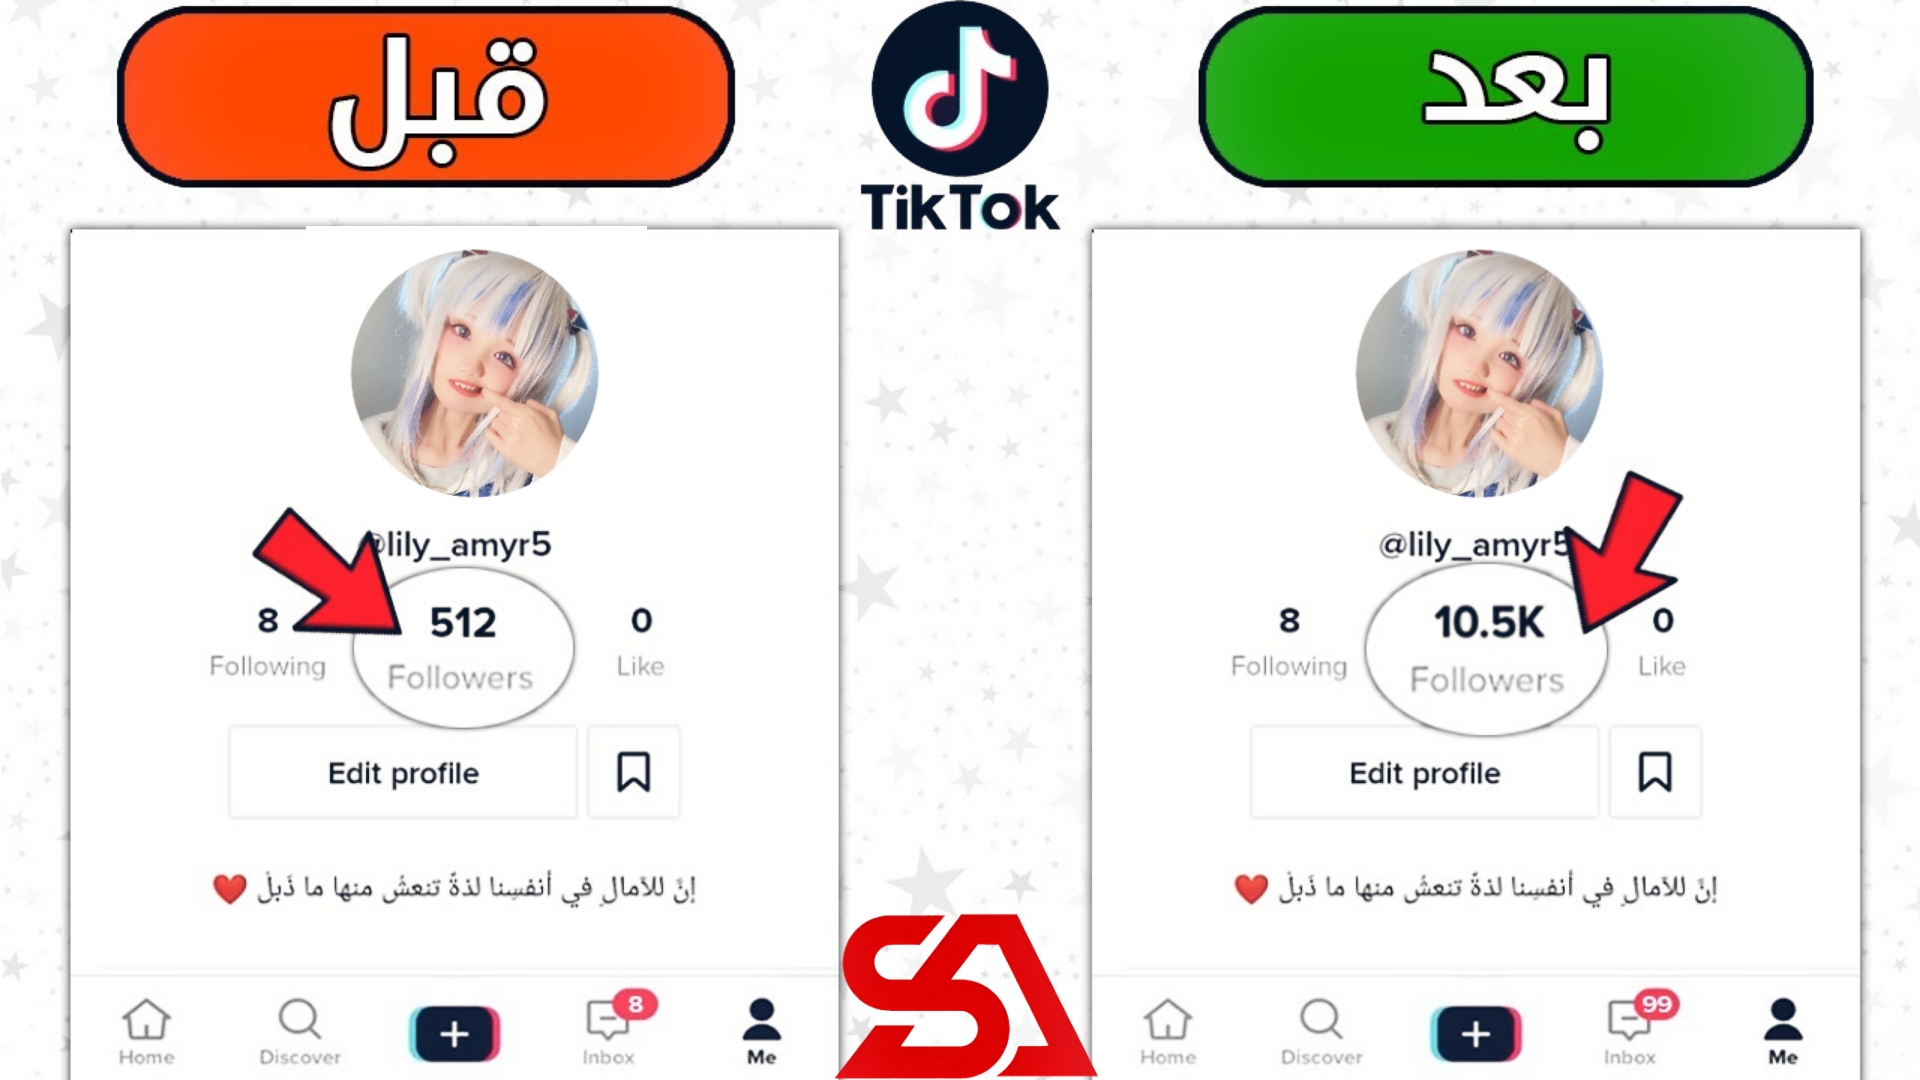 زيادة متابعين تيك توك حقيقي عرب مجانا 100K من أي دولة عربية